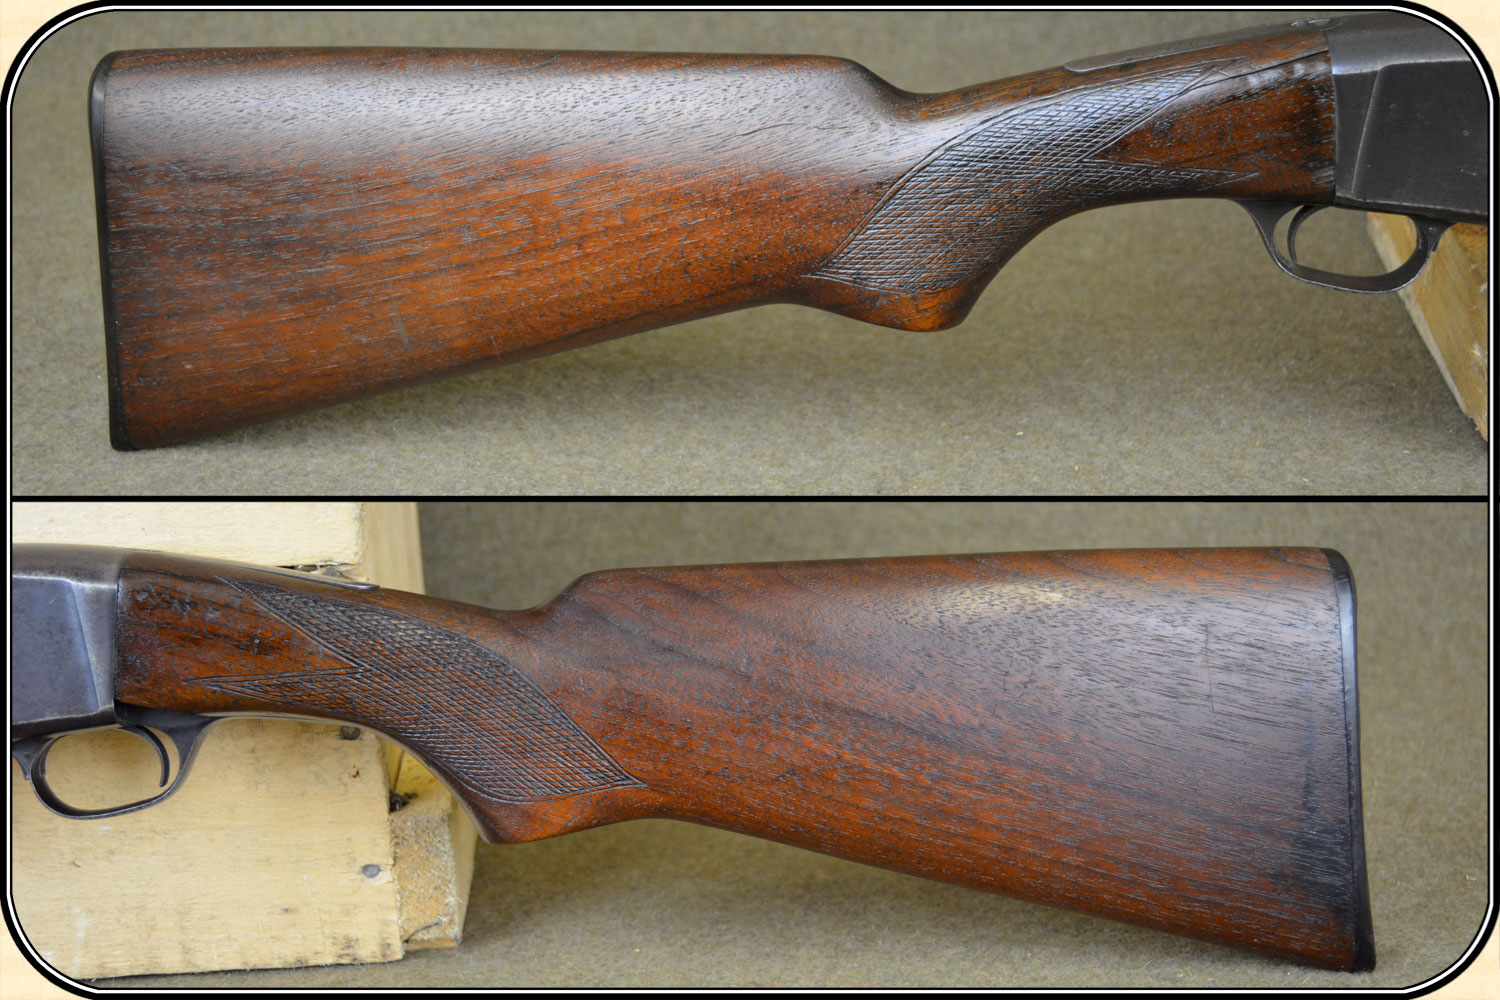 remington model 12 serial number lu 698284